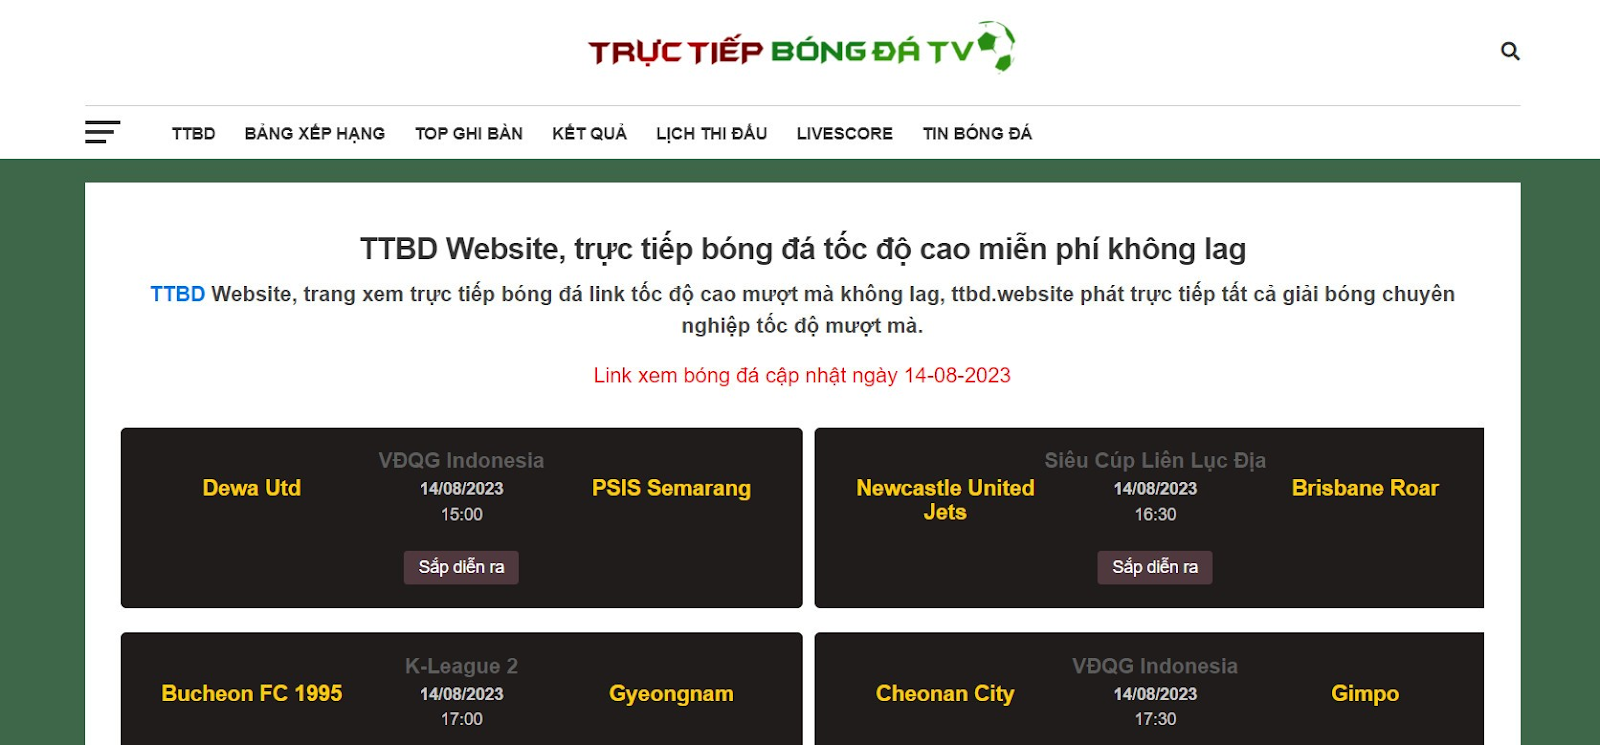 TTBD Website - Xem trực tiếp bóng đá số 1 đẳng cấp quốc tế